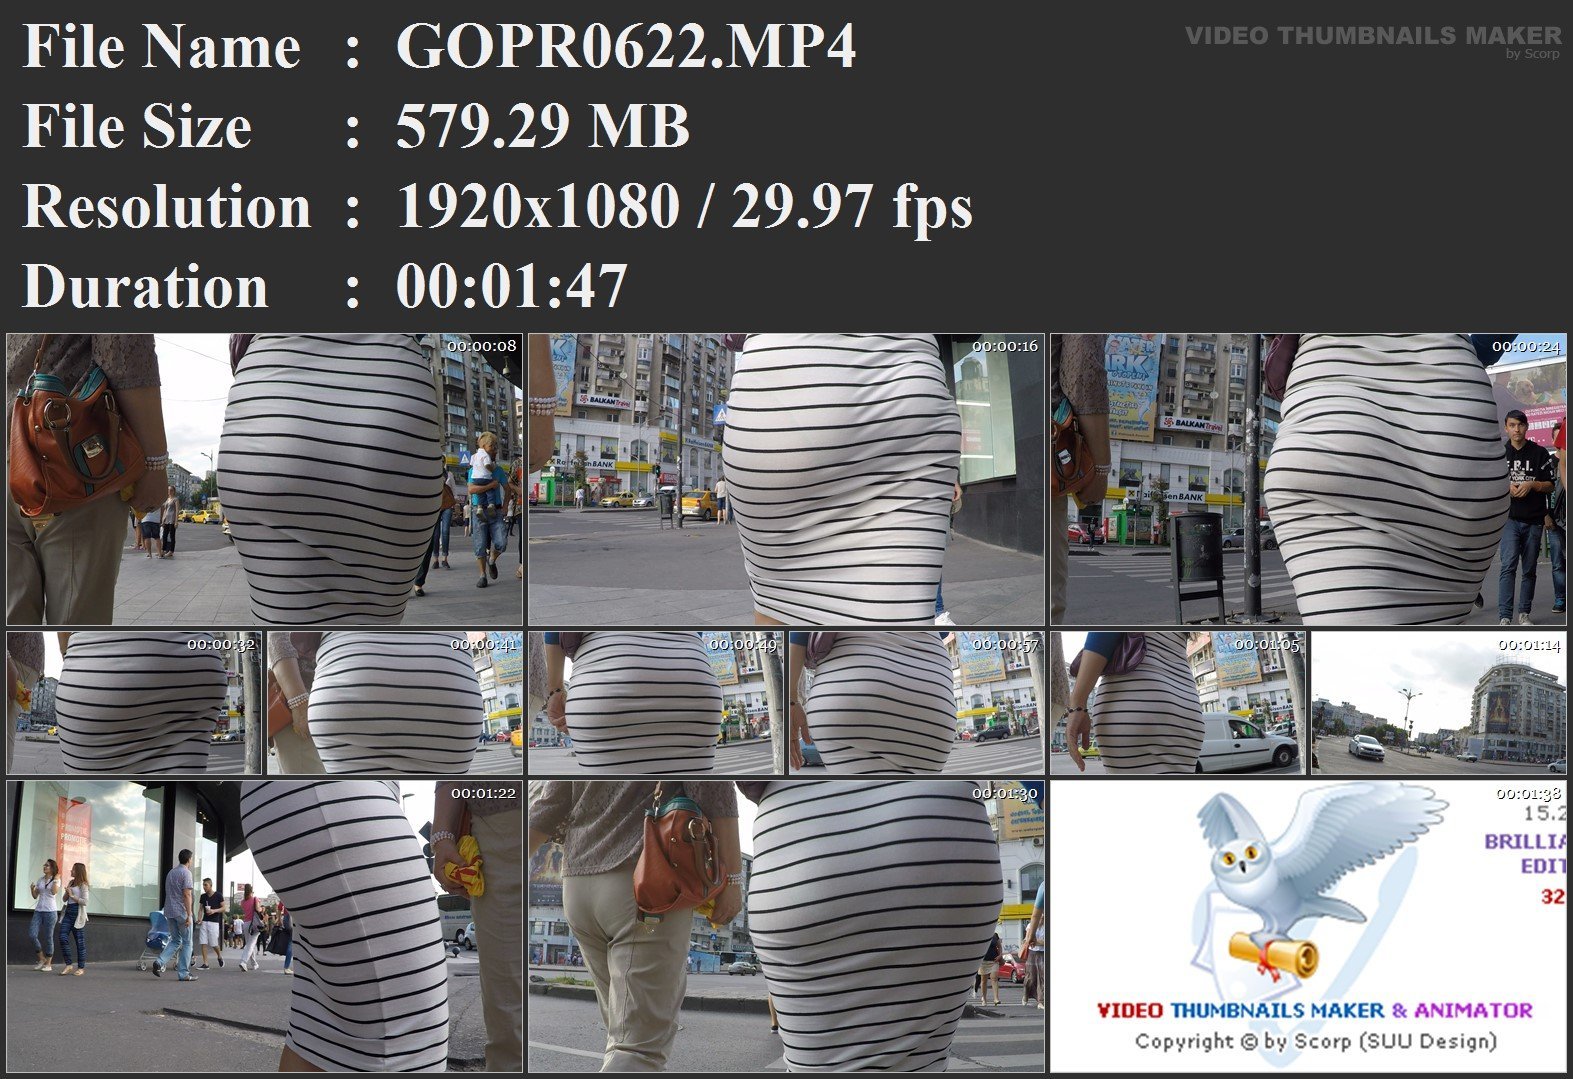 GOPR0622.MP4.jpg